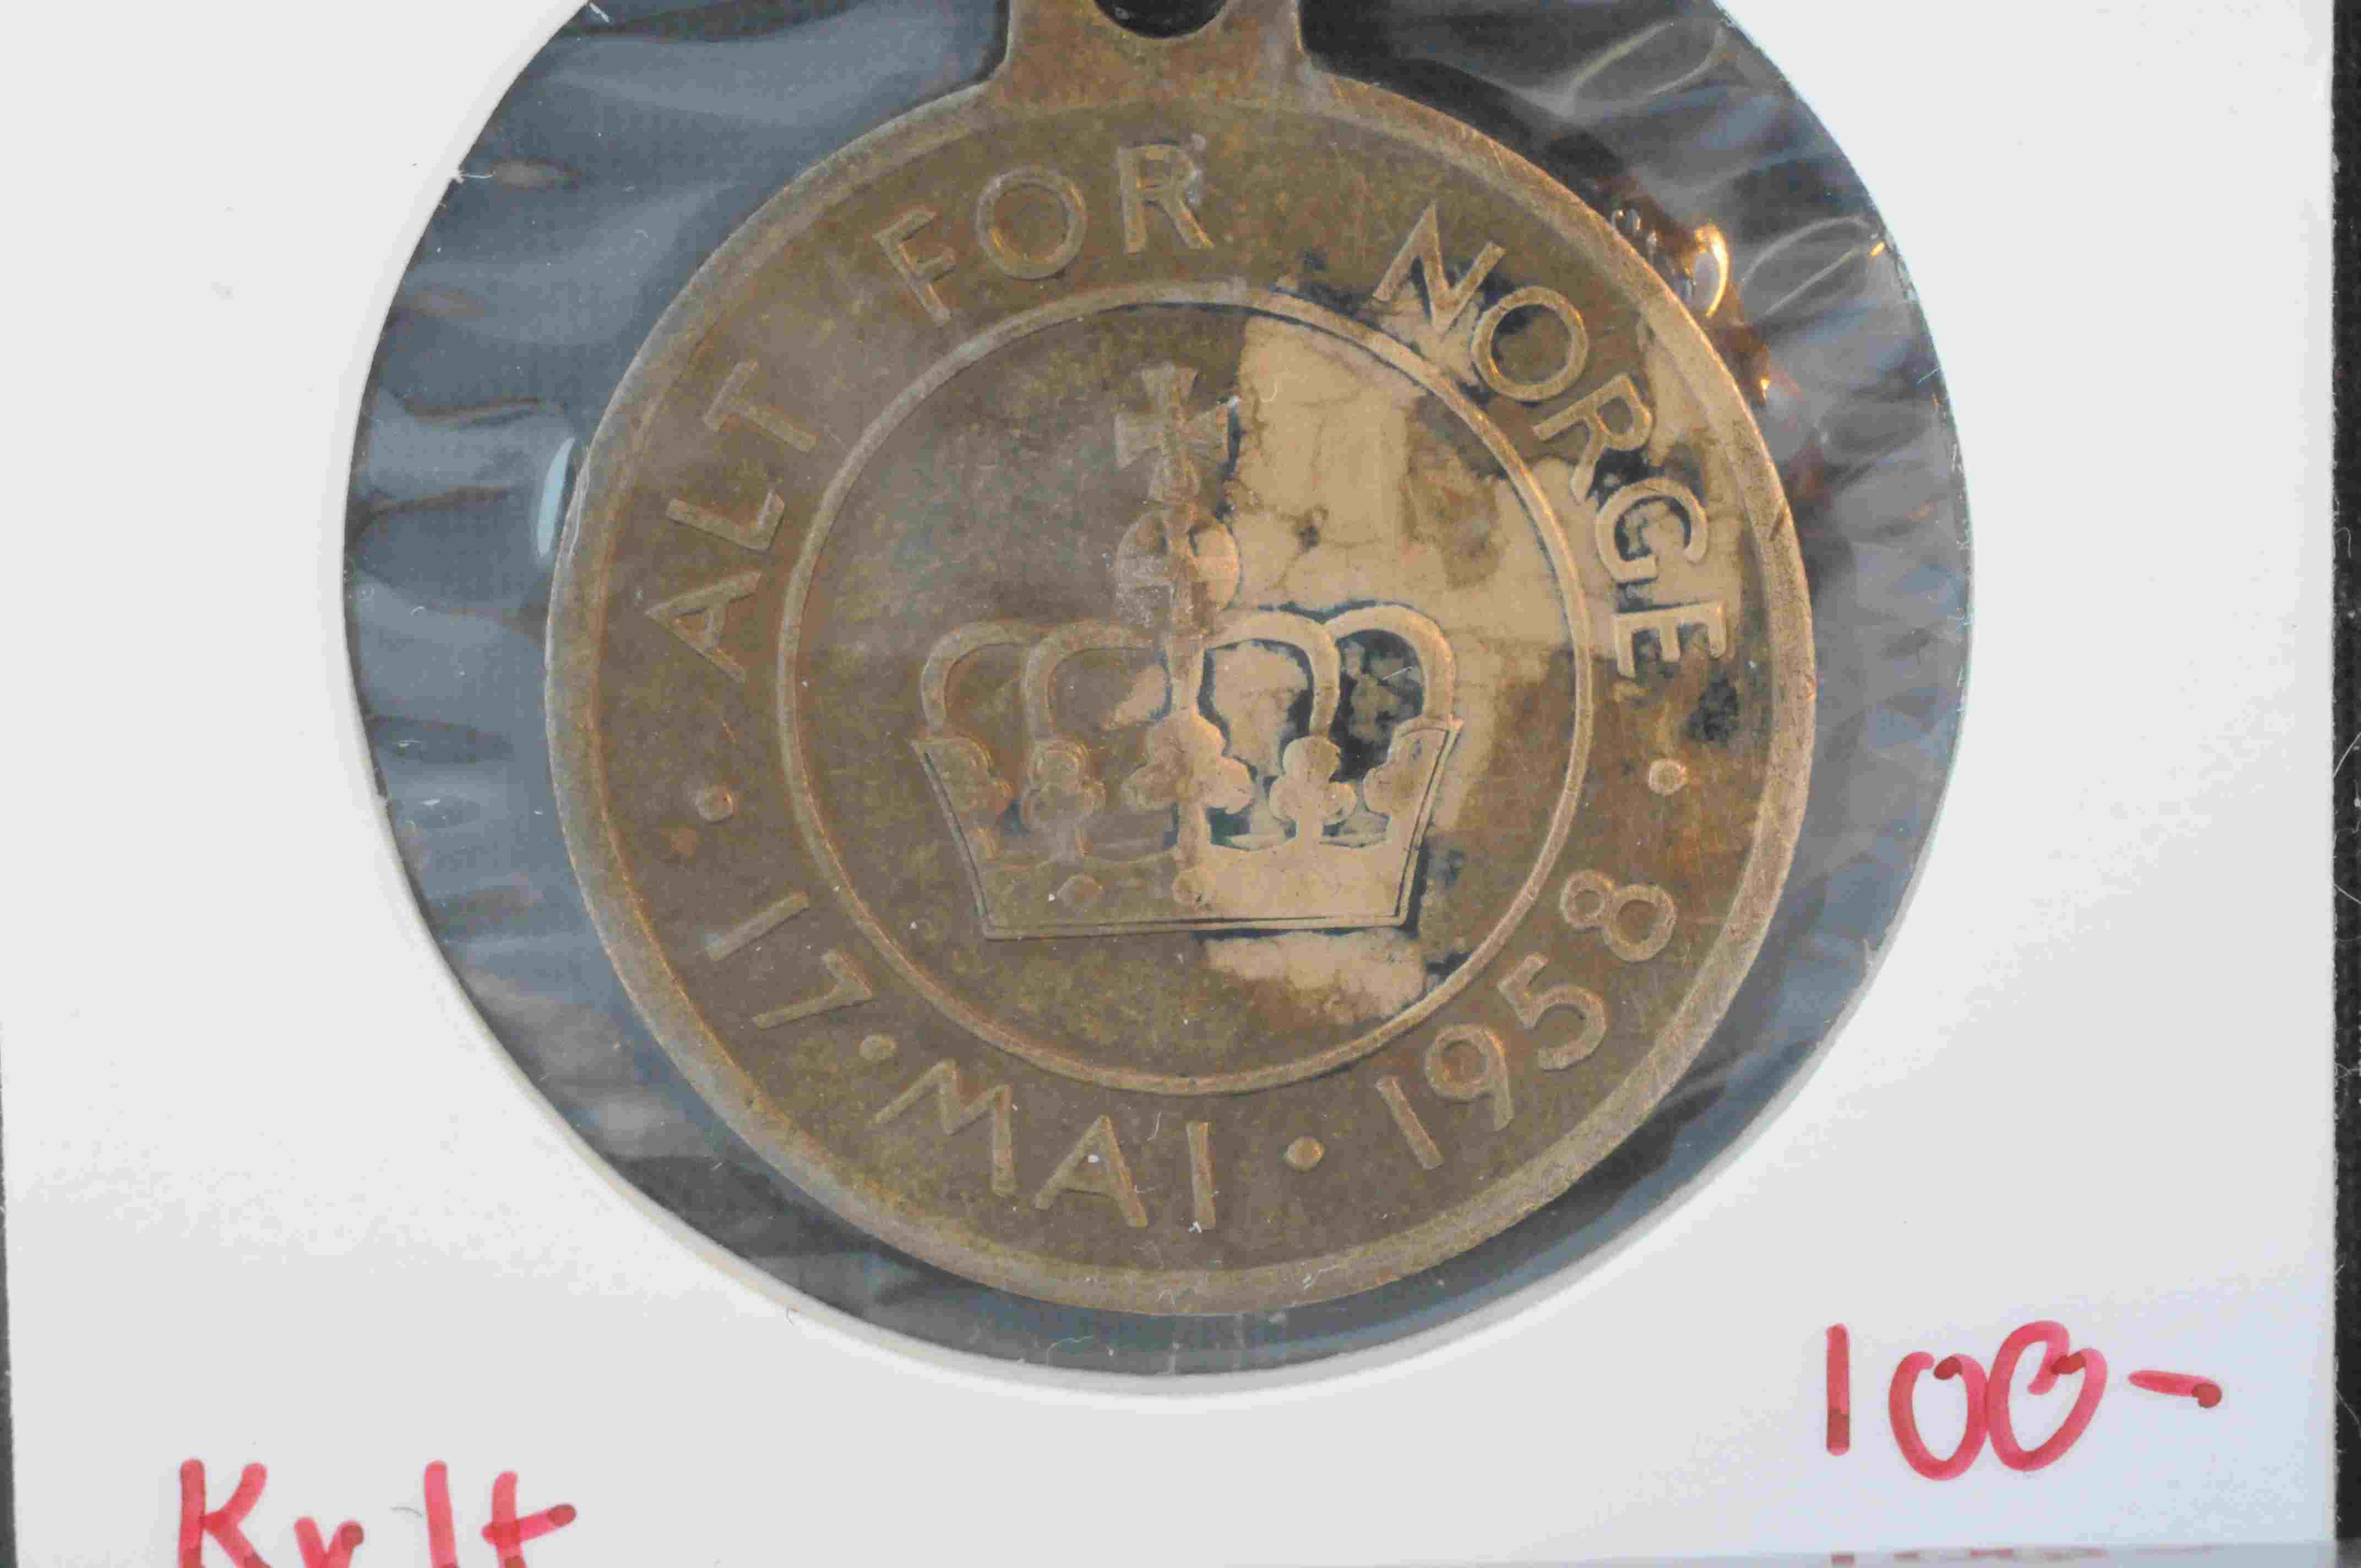 17 mai medalje 1958 kv1+